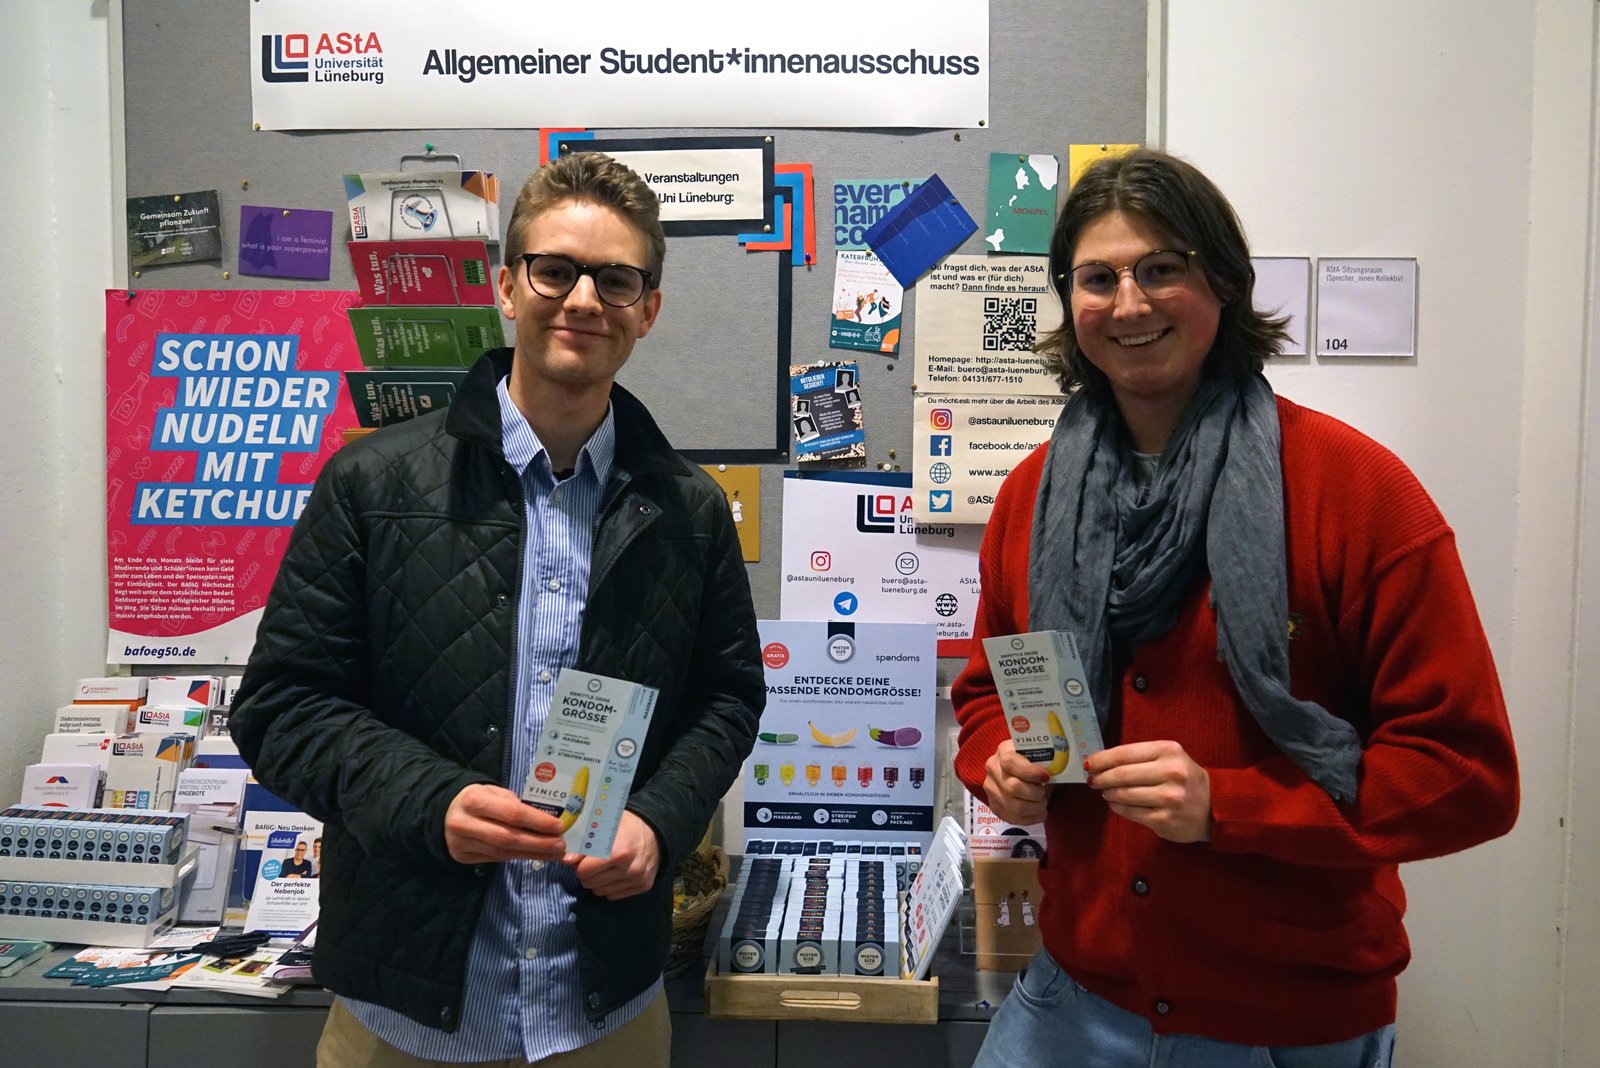 Luis van Spondoms (links) opent de gratis condoomautomaat samen met Max van het AStA van de Leuphana Universiteit Lüneburg (rechts).